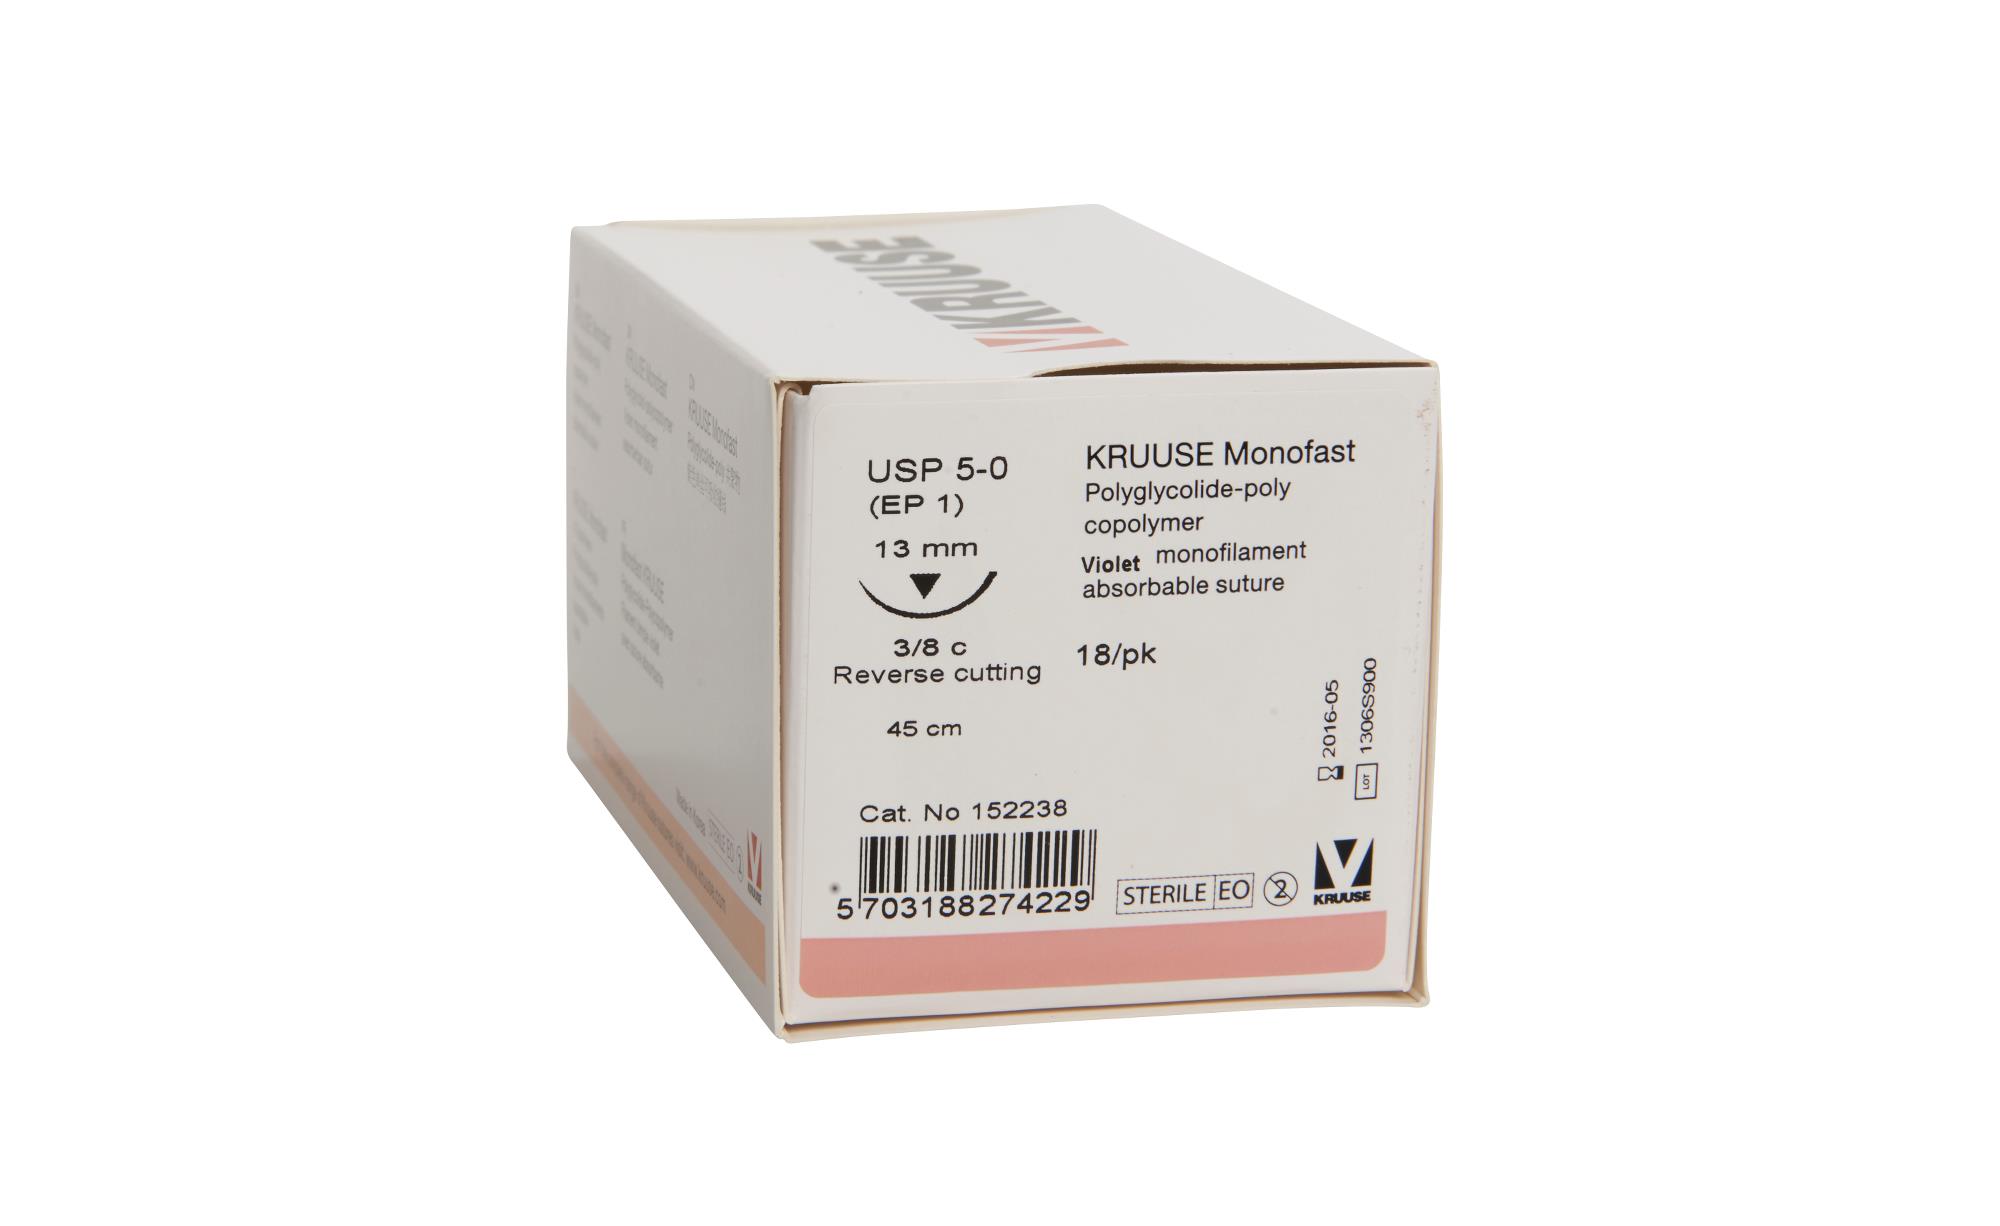 KRUUSE Monofast Suture, USP 5-0, 45 cm, violet, 13 mm needle, 3/8 C, RC, 18/pk